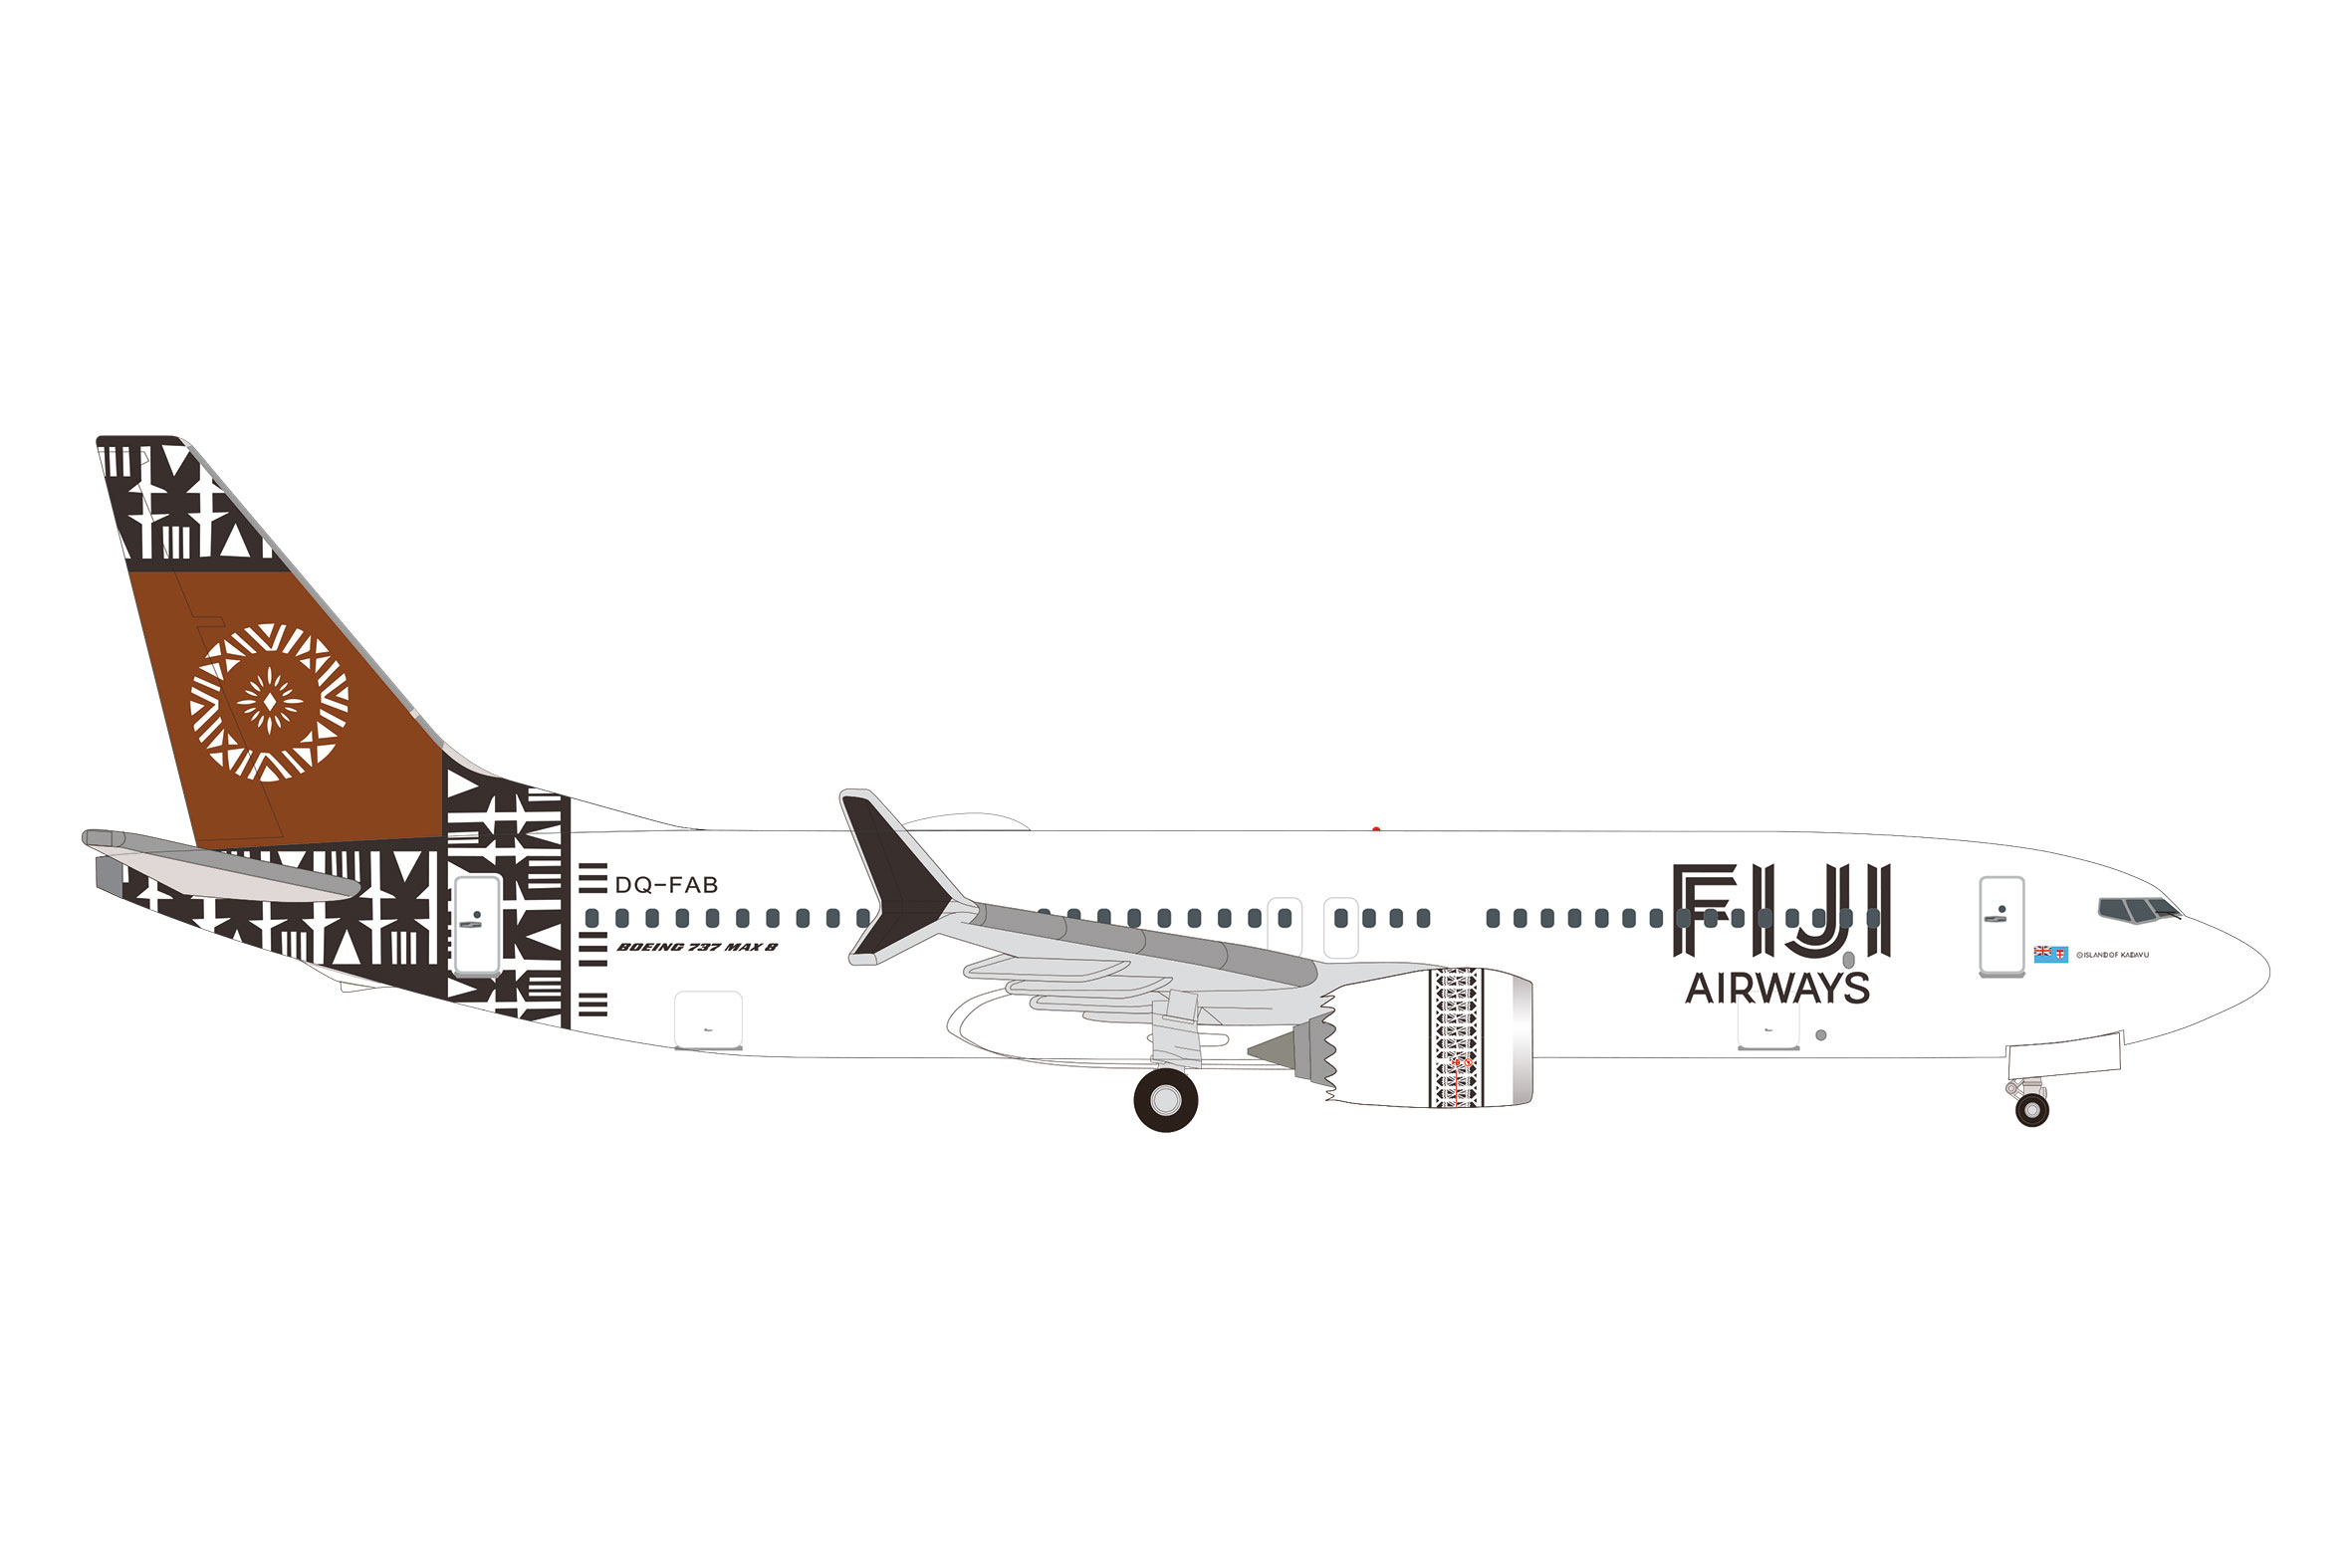 Fiji 737 Max 8 - "Island of Kadavu" Reg.:  DQ-FAB